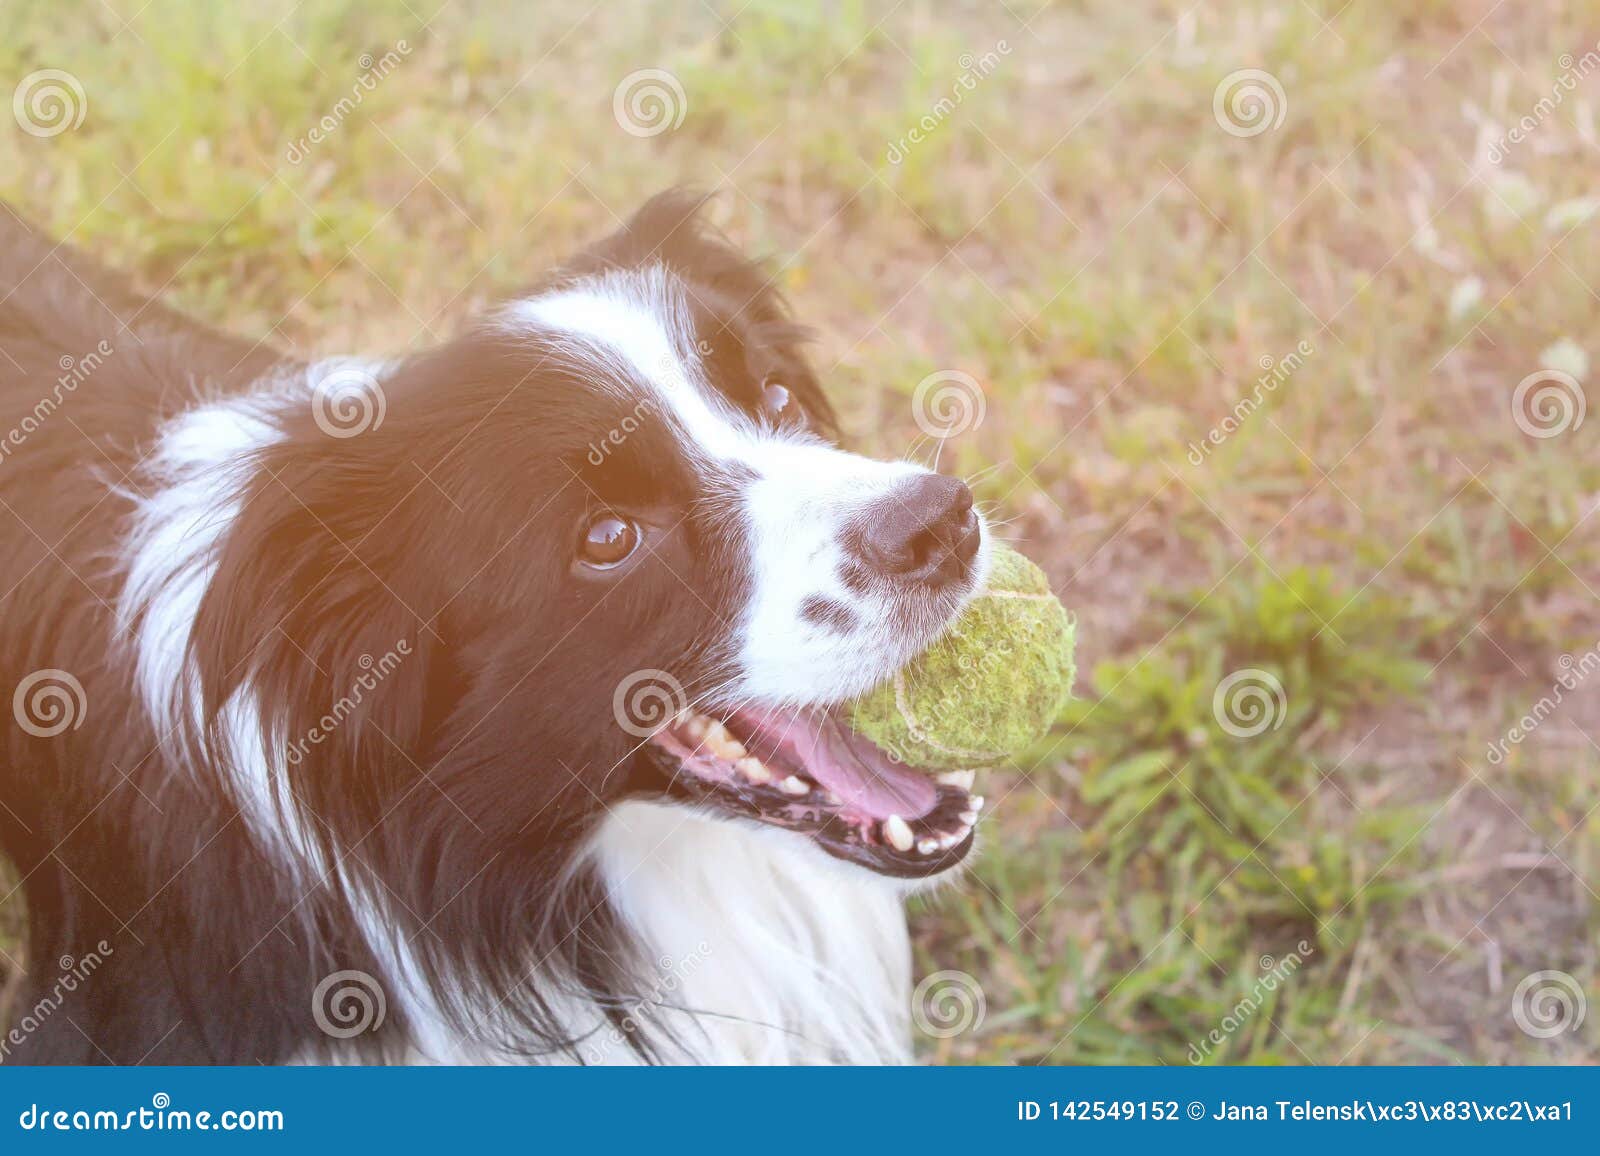 狗在草在公园品种是博德牧羊犬背景是绿色的他有网球在嘴狗使用库存照片 图片包括有品种是博德牧羊犬 背景是绿色的